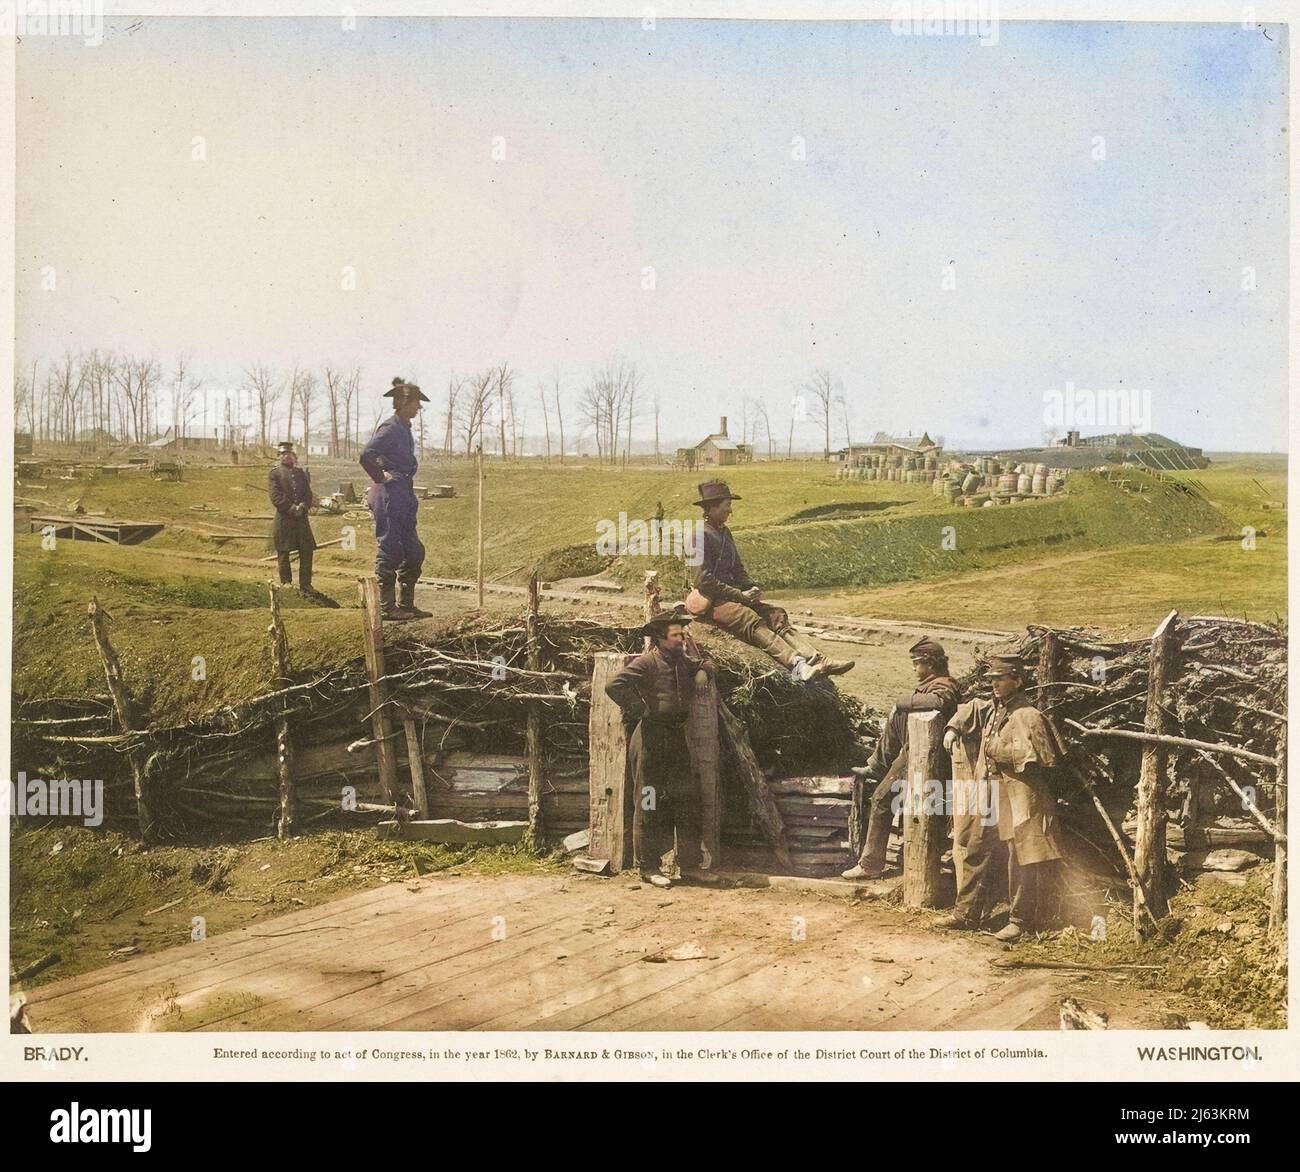 Fortifications, Manassas, März 1862, Barnard & Gibson. Unionssoldaten untersuchen die umfangreichen Verteidigungsarbeiten, die von der konföderierten Armee errichtet wurden. Stockfoto